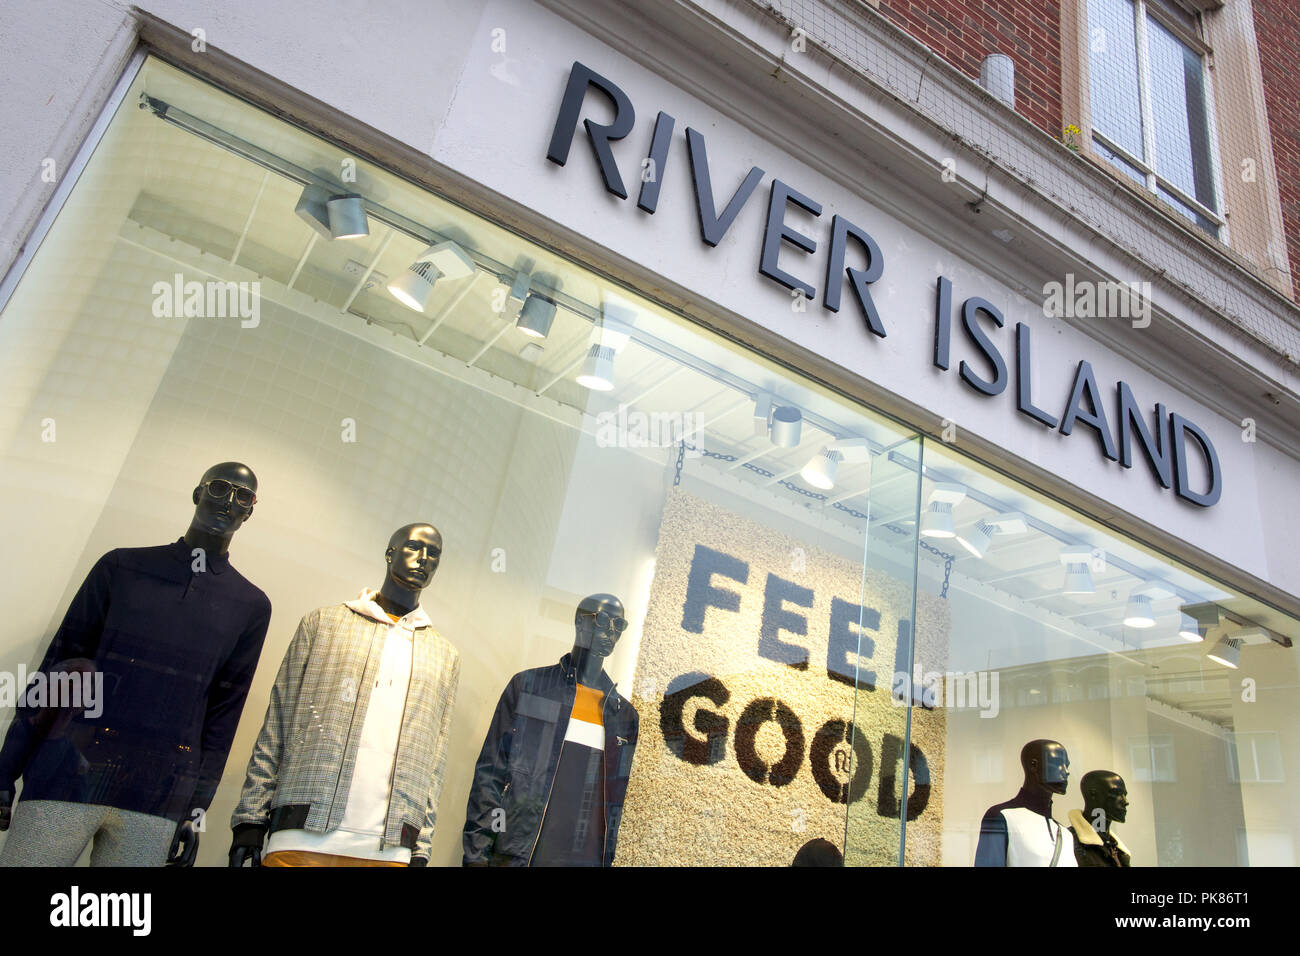 River Island store Foto de stock